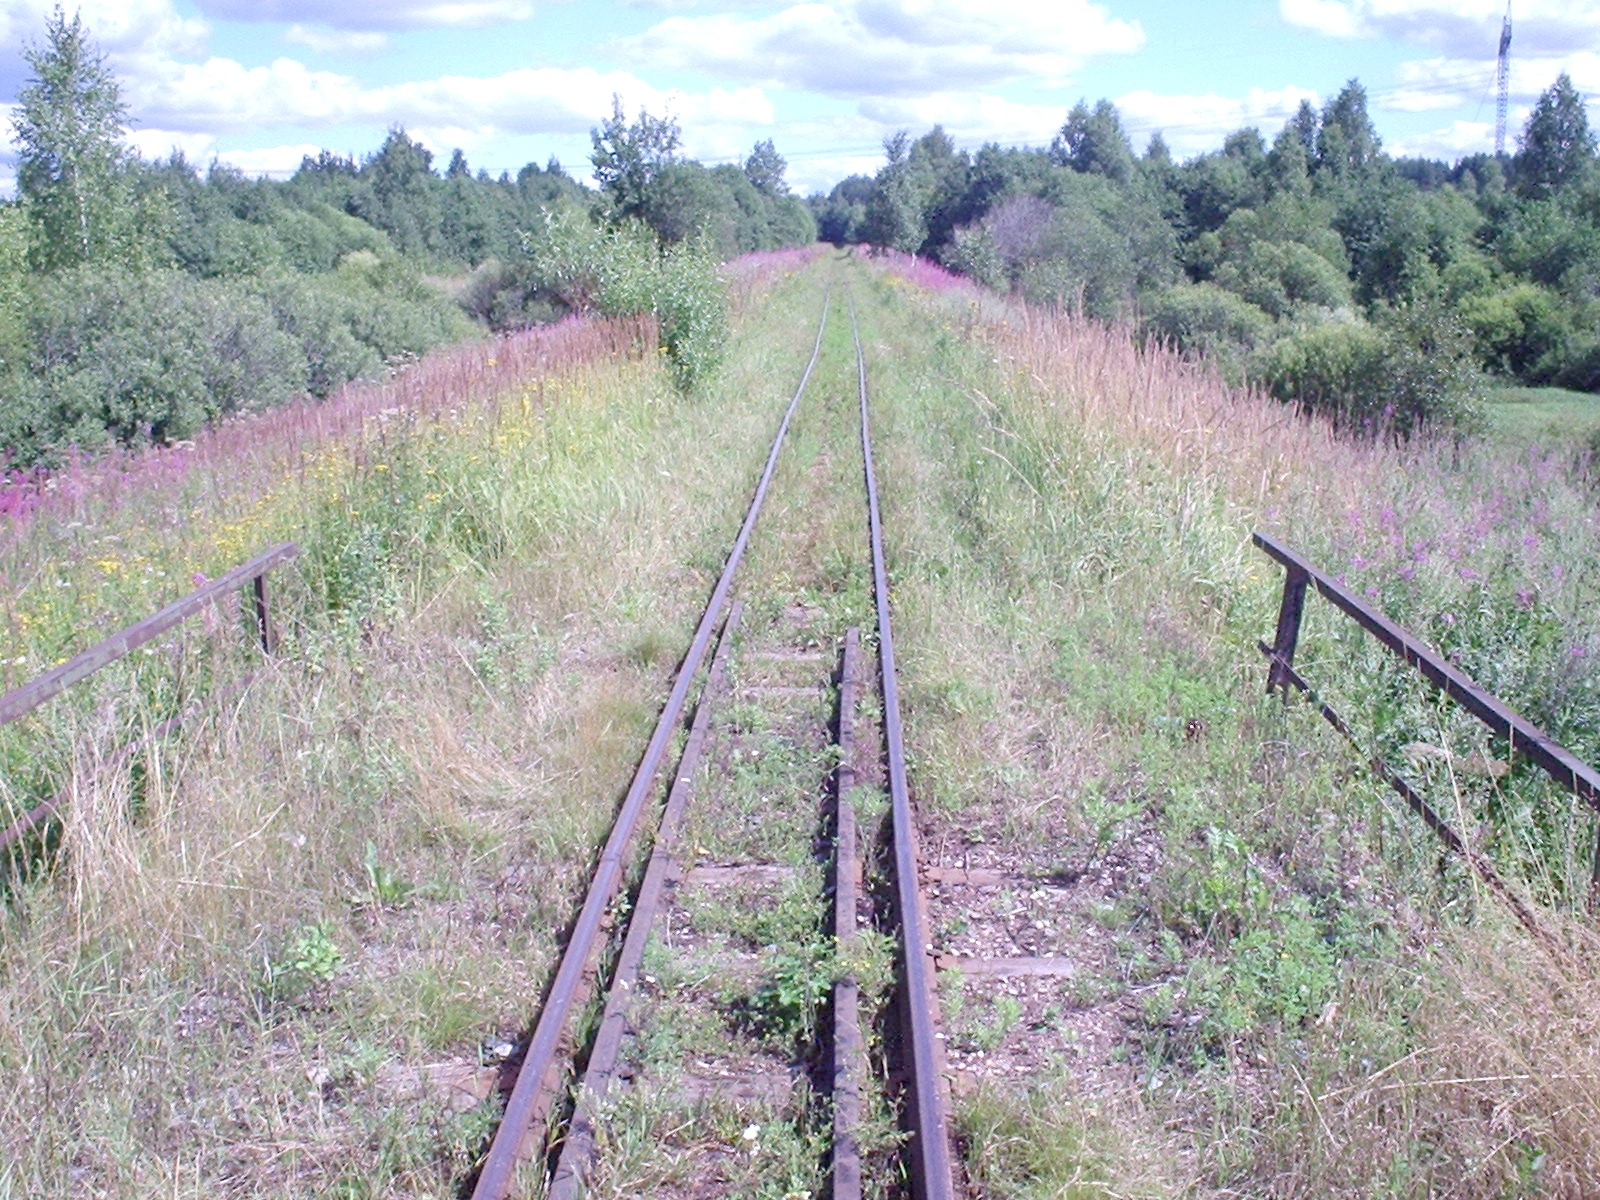 Узкоколейная железная дорога Васильевского предприятия промышленного железнодорожного транспорта  — фотографии, сделанные в 2005 году (часть 14)